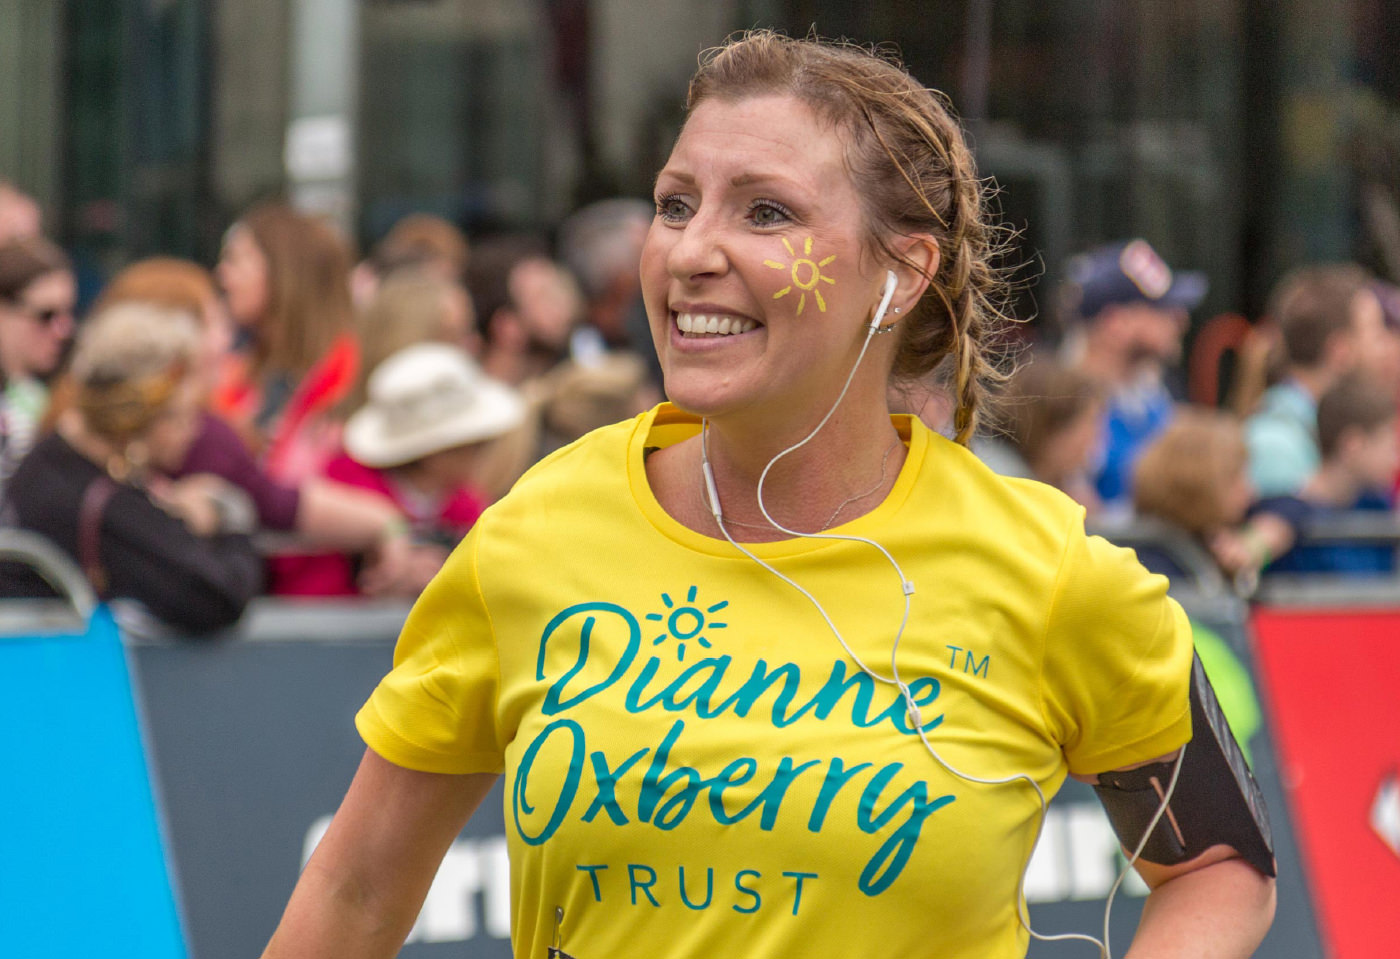 A runner wearing a Dianne Oxberry Trust t-shirt